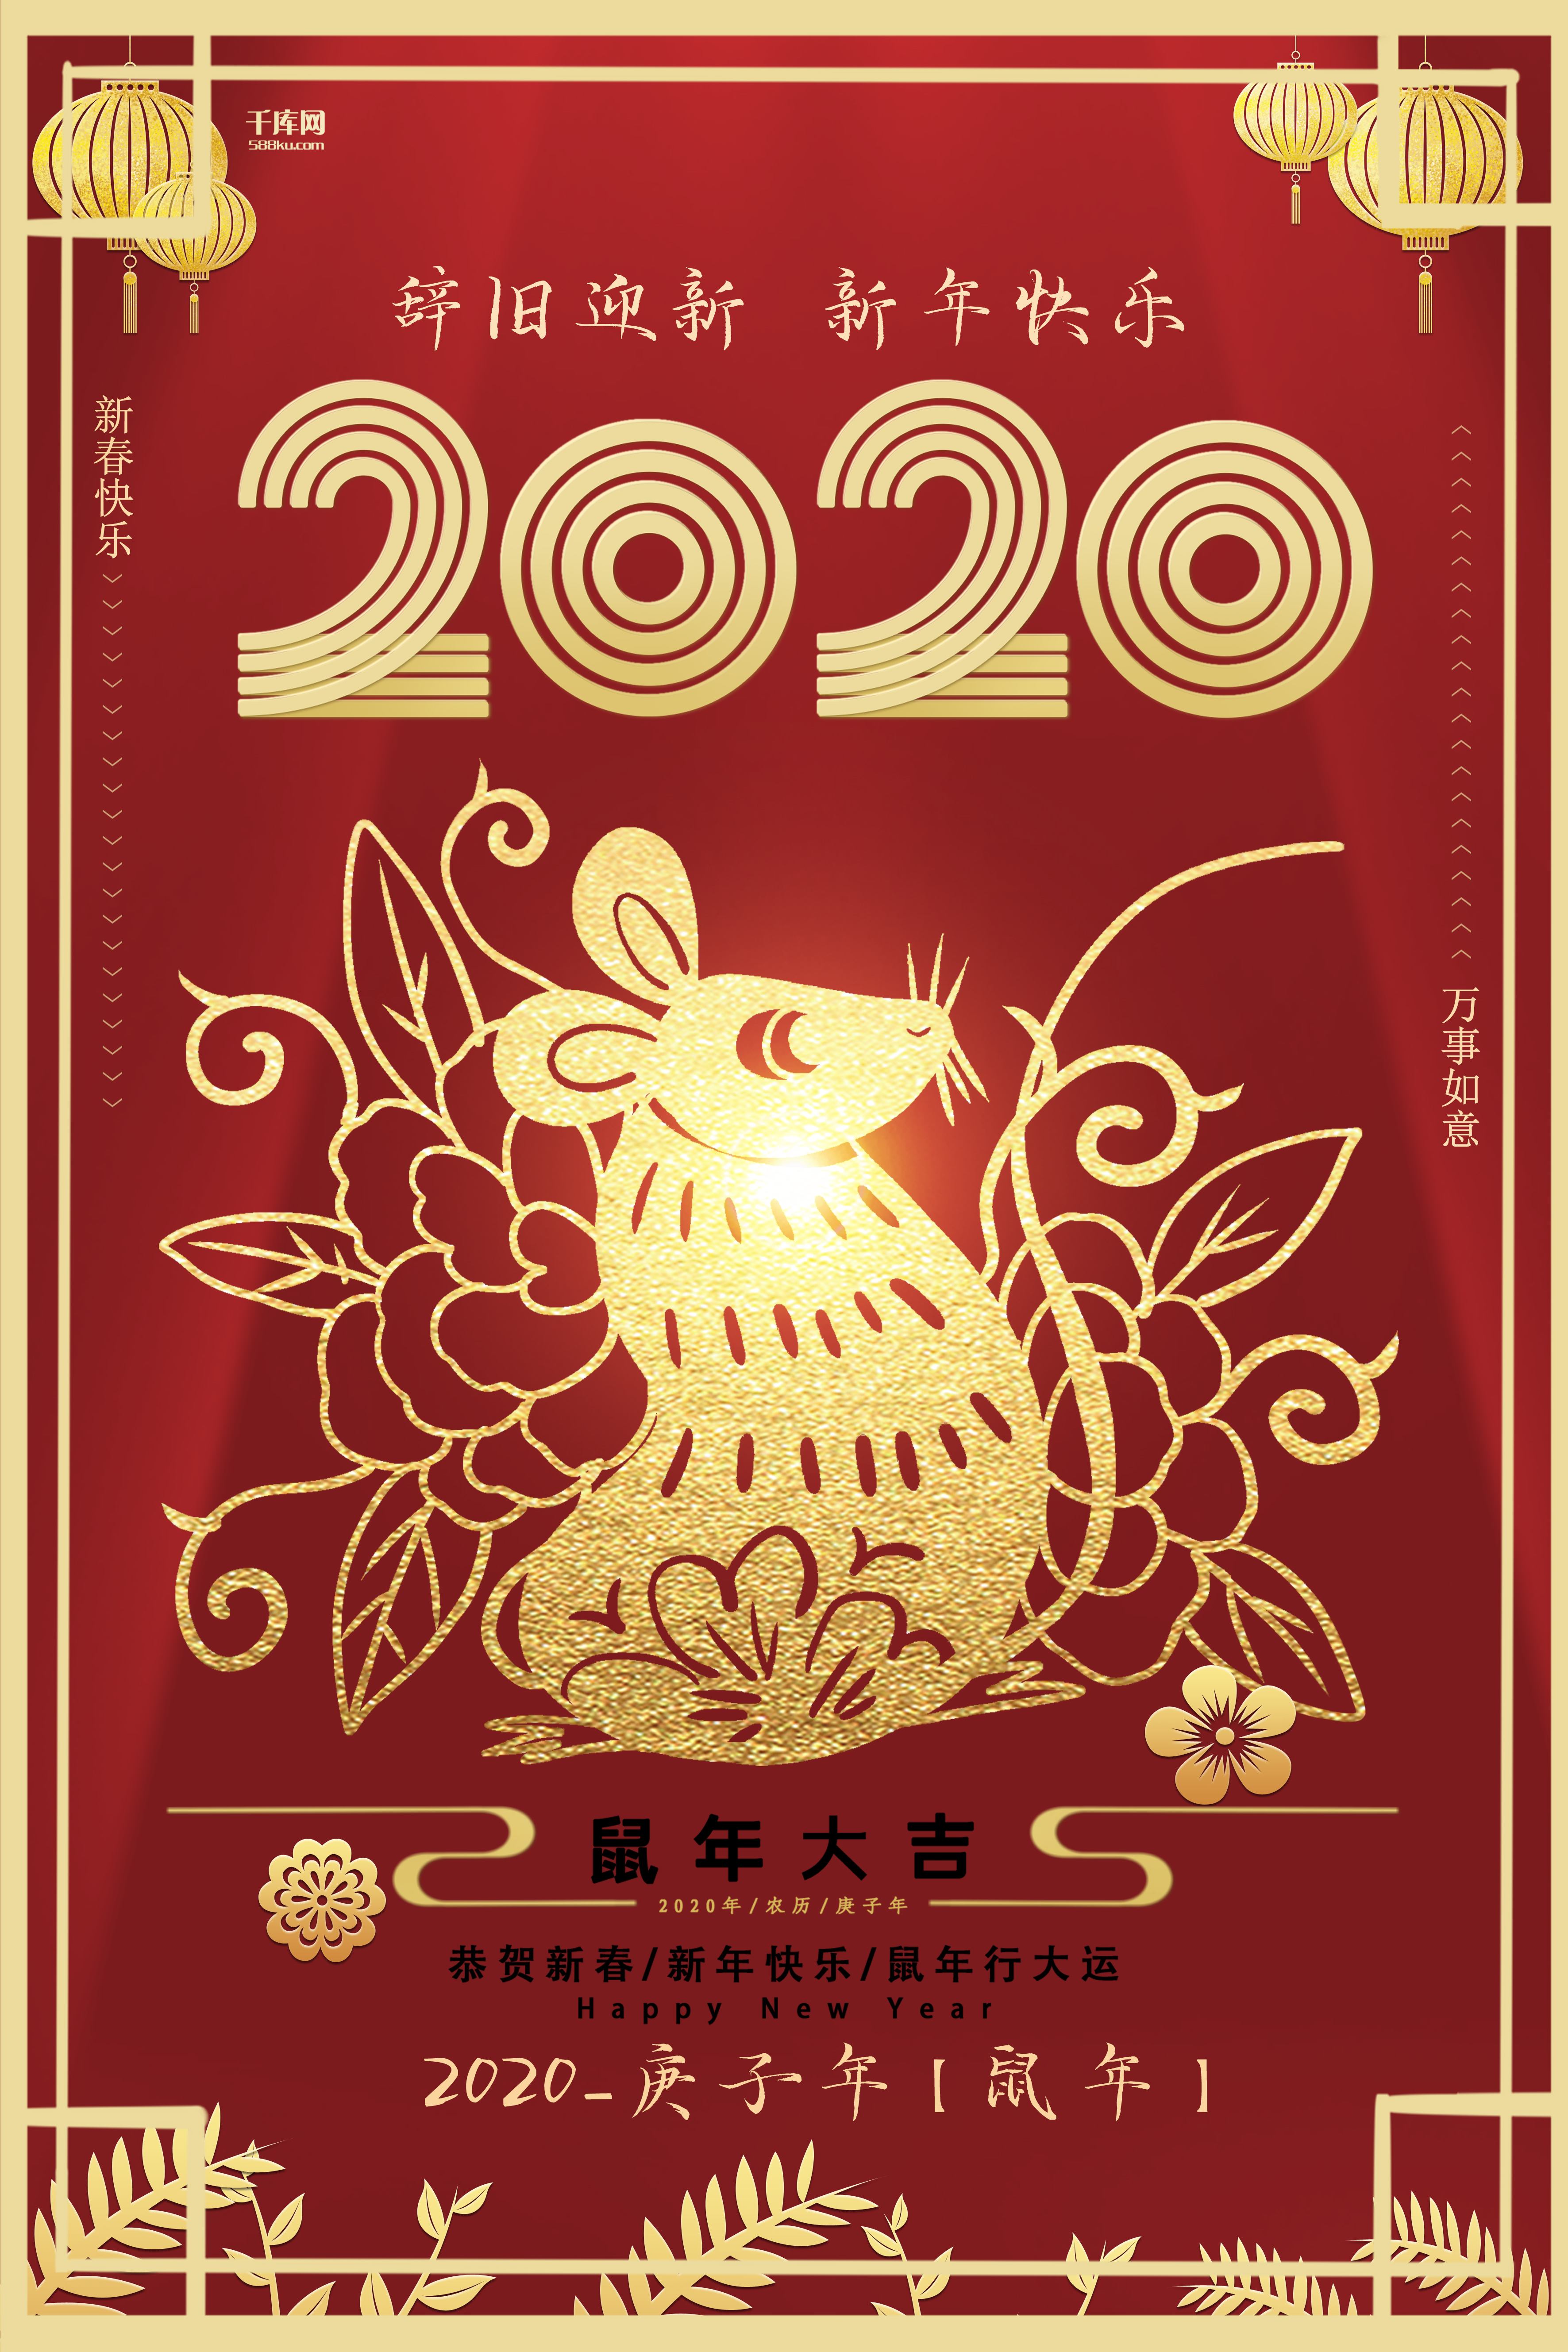 2020鼠年大吉新年快乐剪纸风创意海报图片